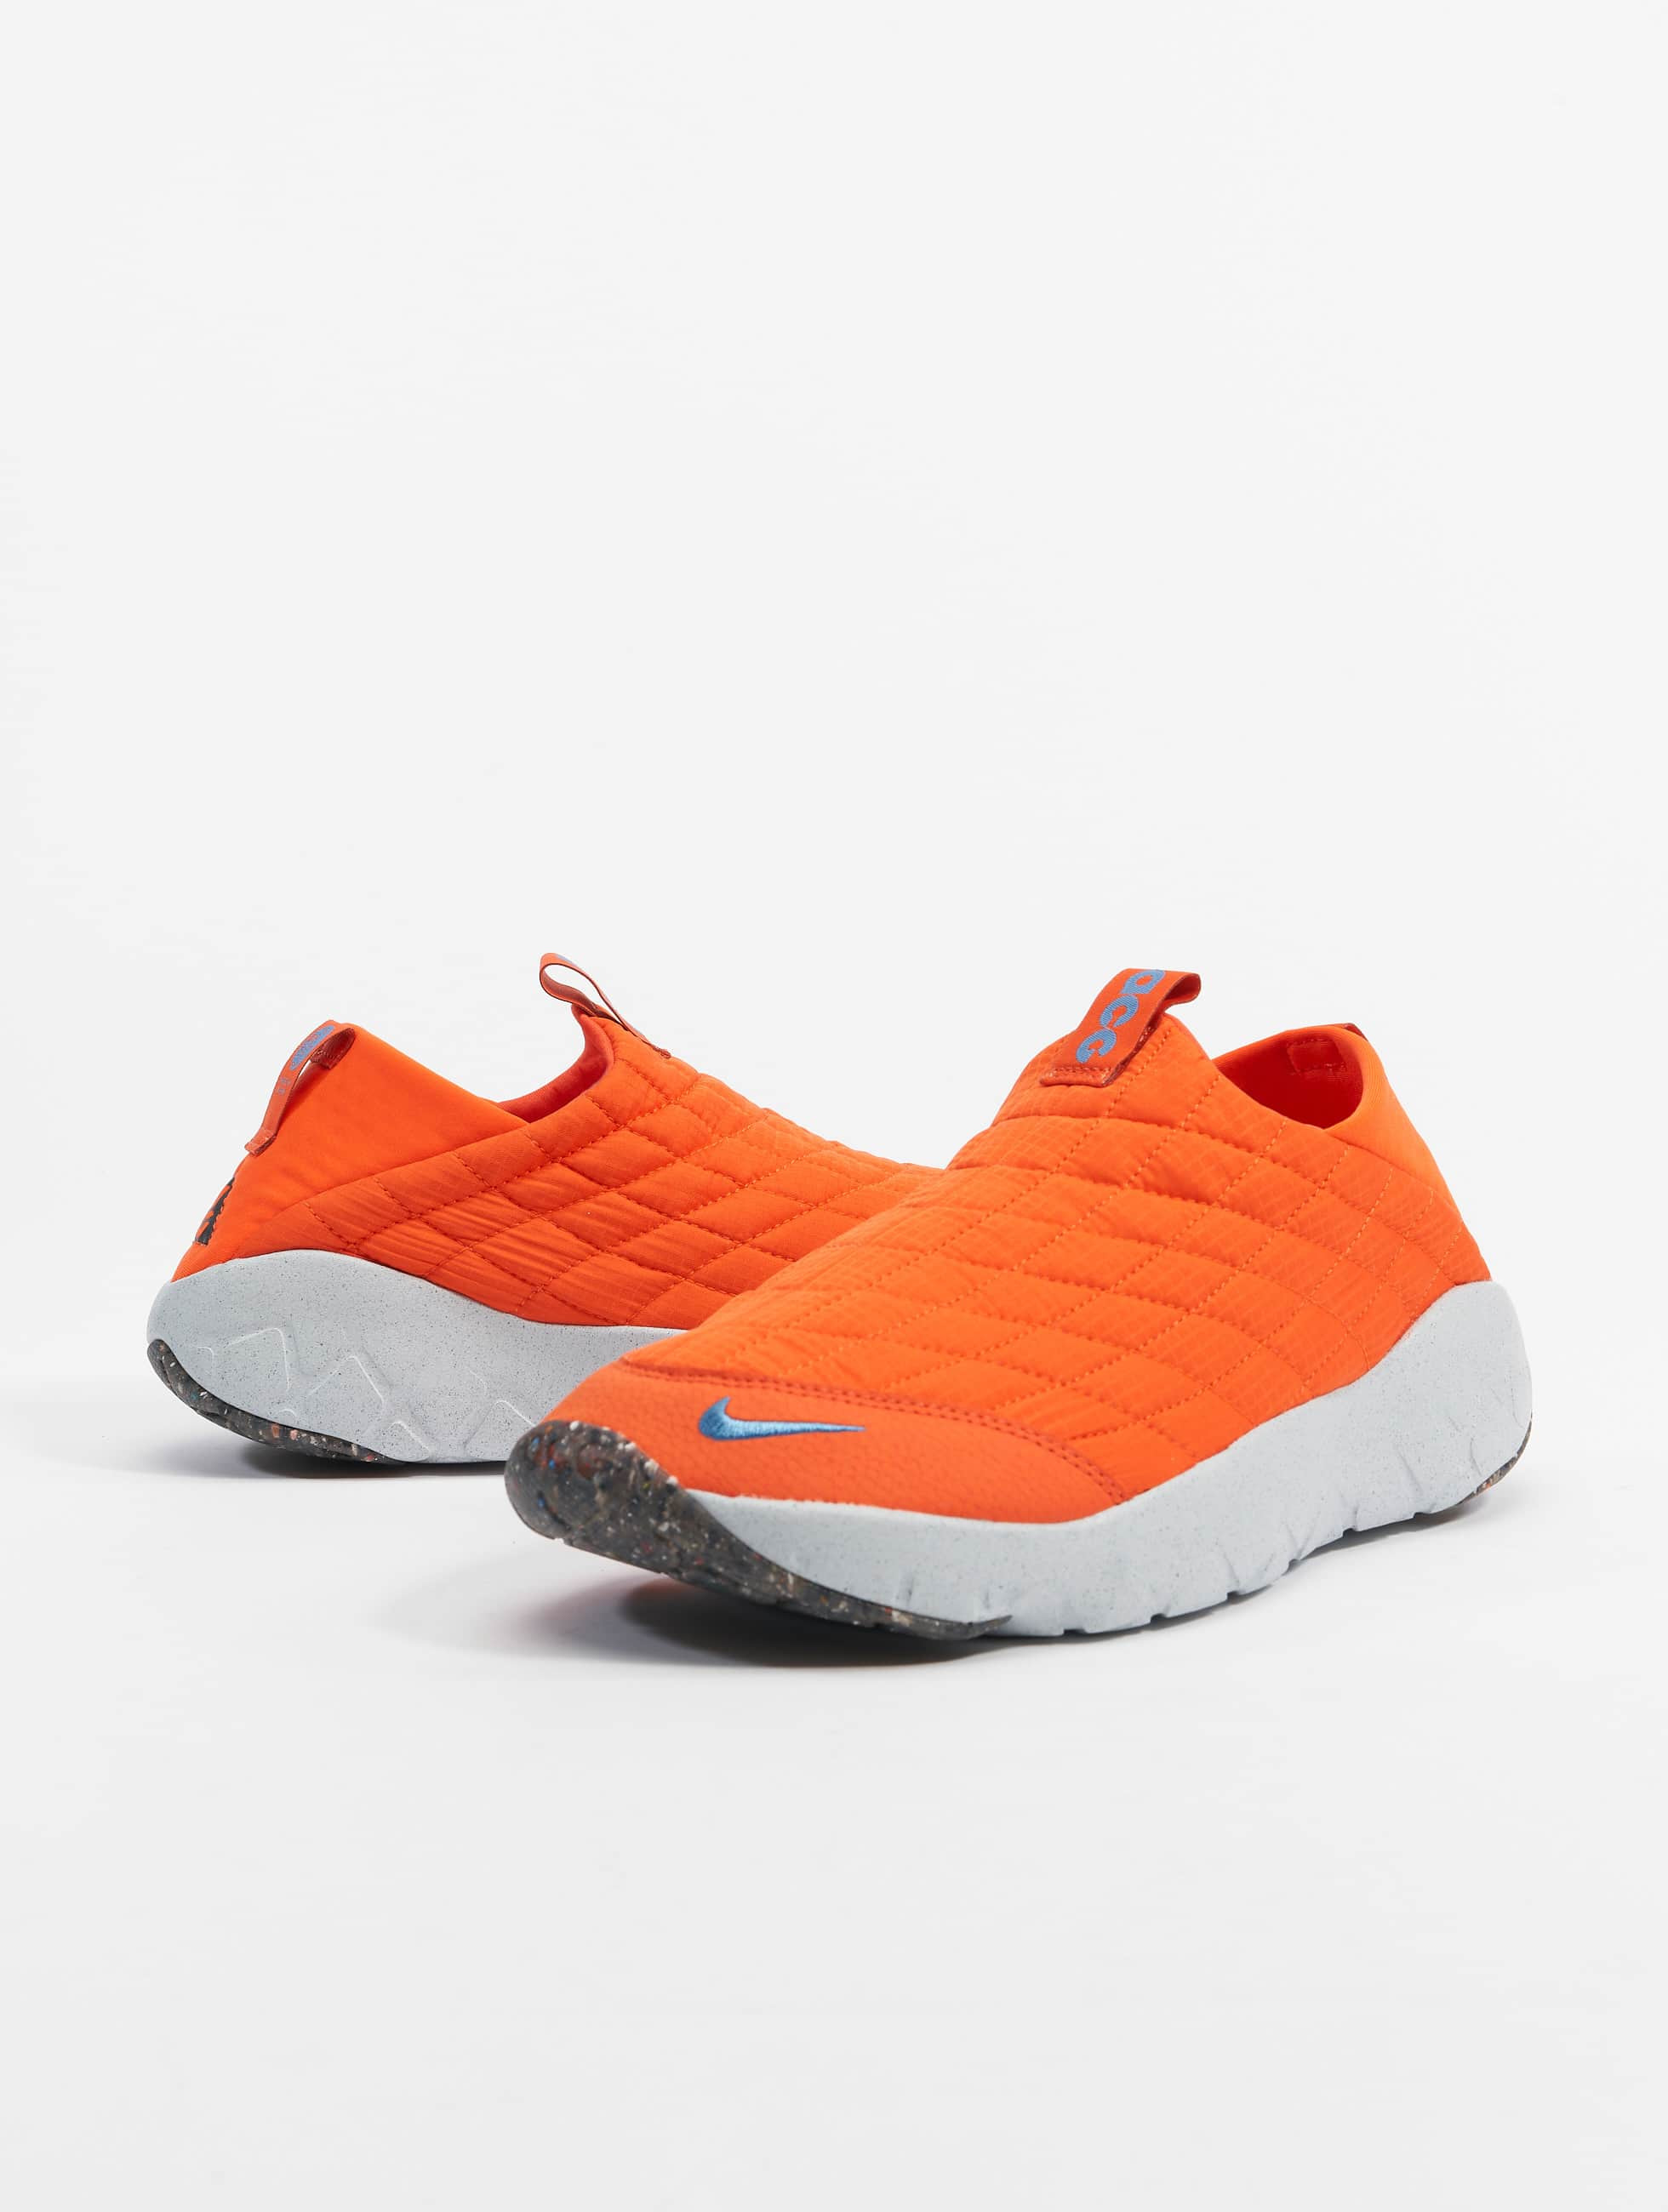 vleet bout Een zekere Nike schoen / sneaker Acg Moc 3.5 in oranje 983382